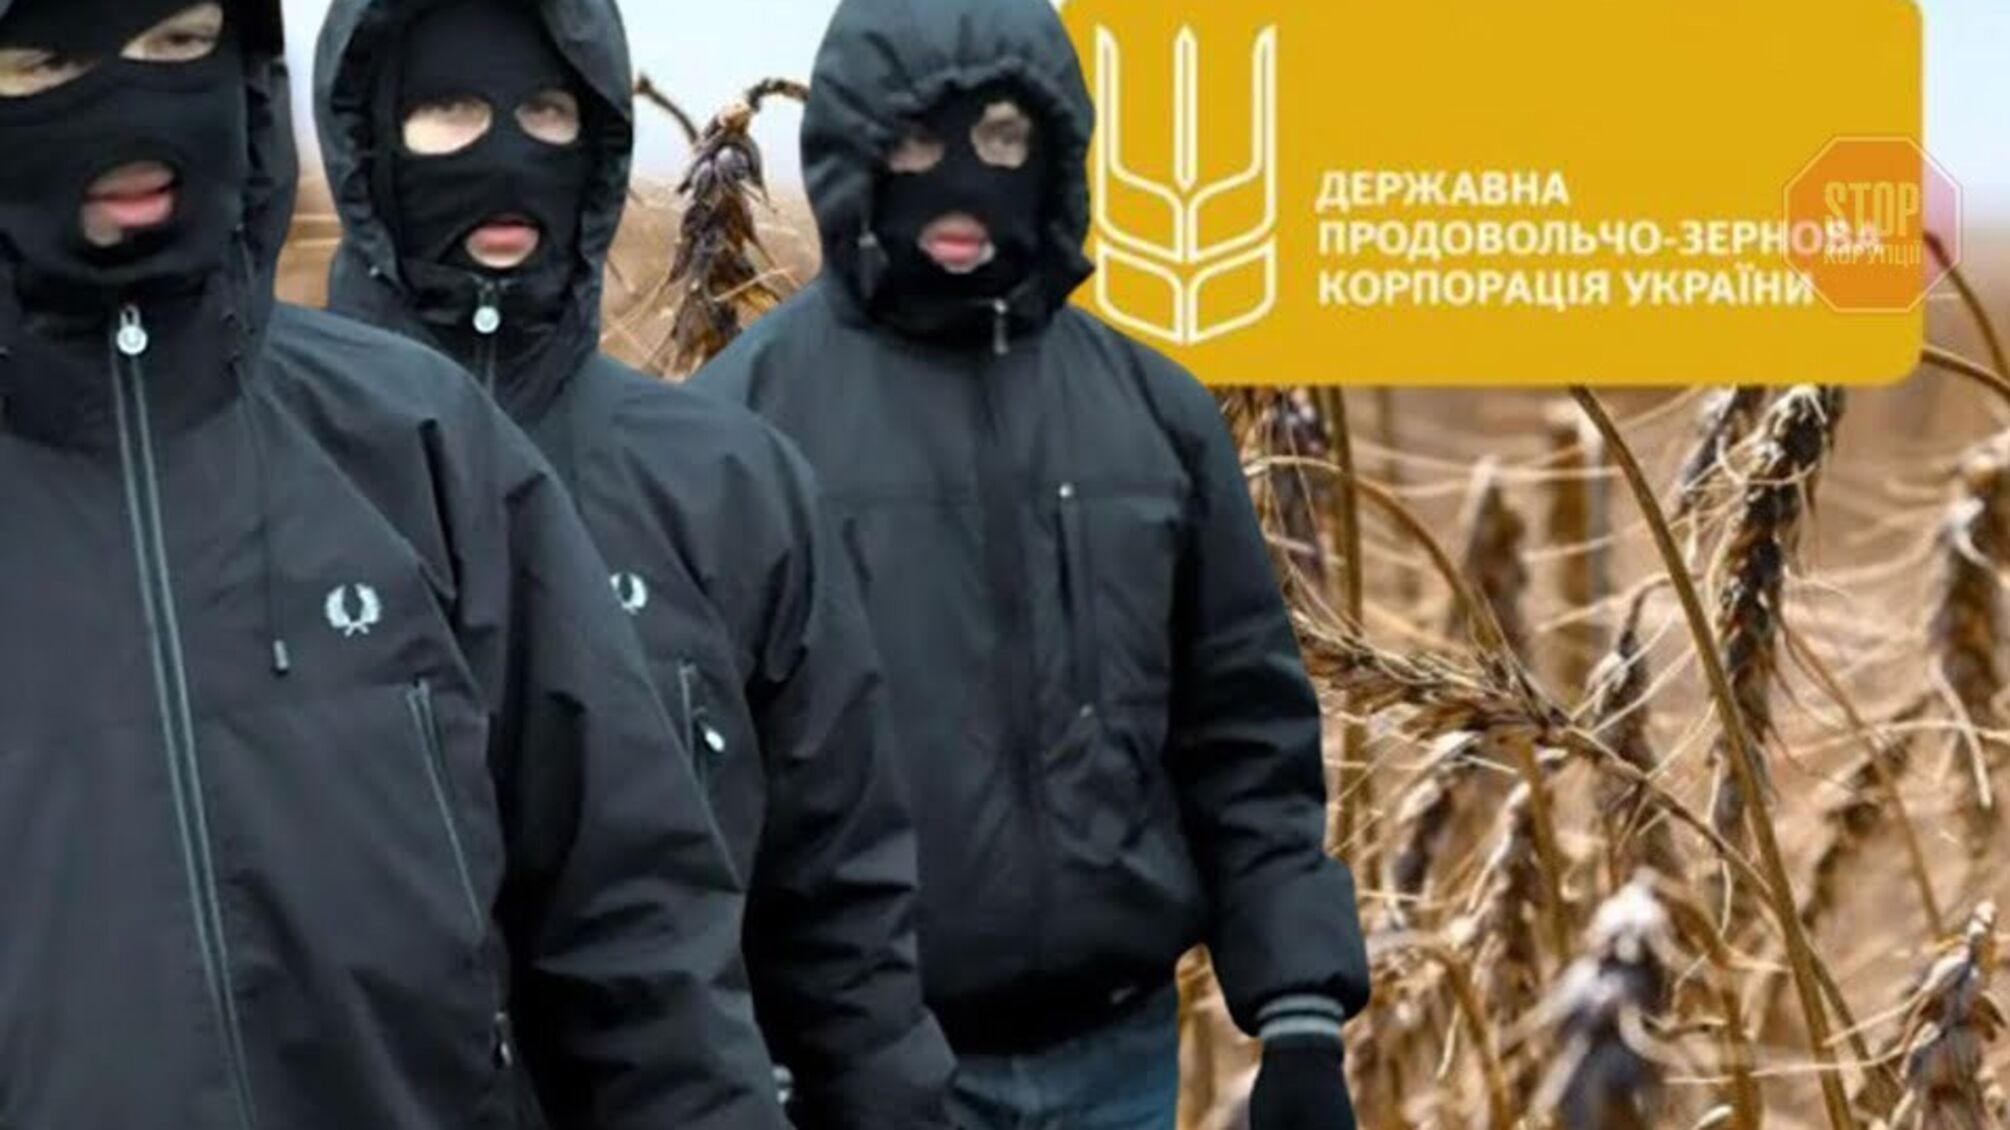 Сімейний підряд на підприємствах Державної продовольчо-зернової корпорації України: брати із темним минулим очолили дві компанії